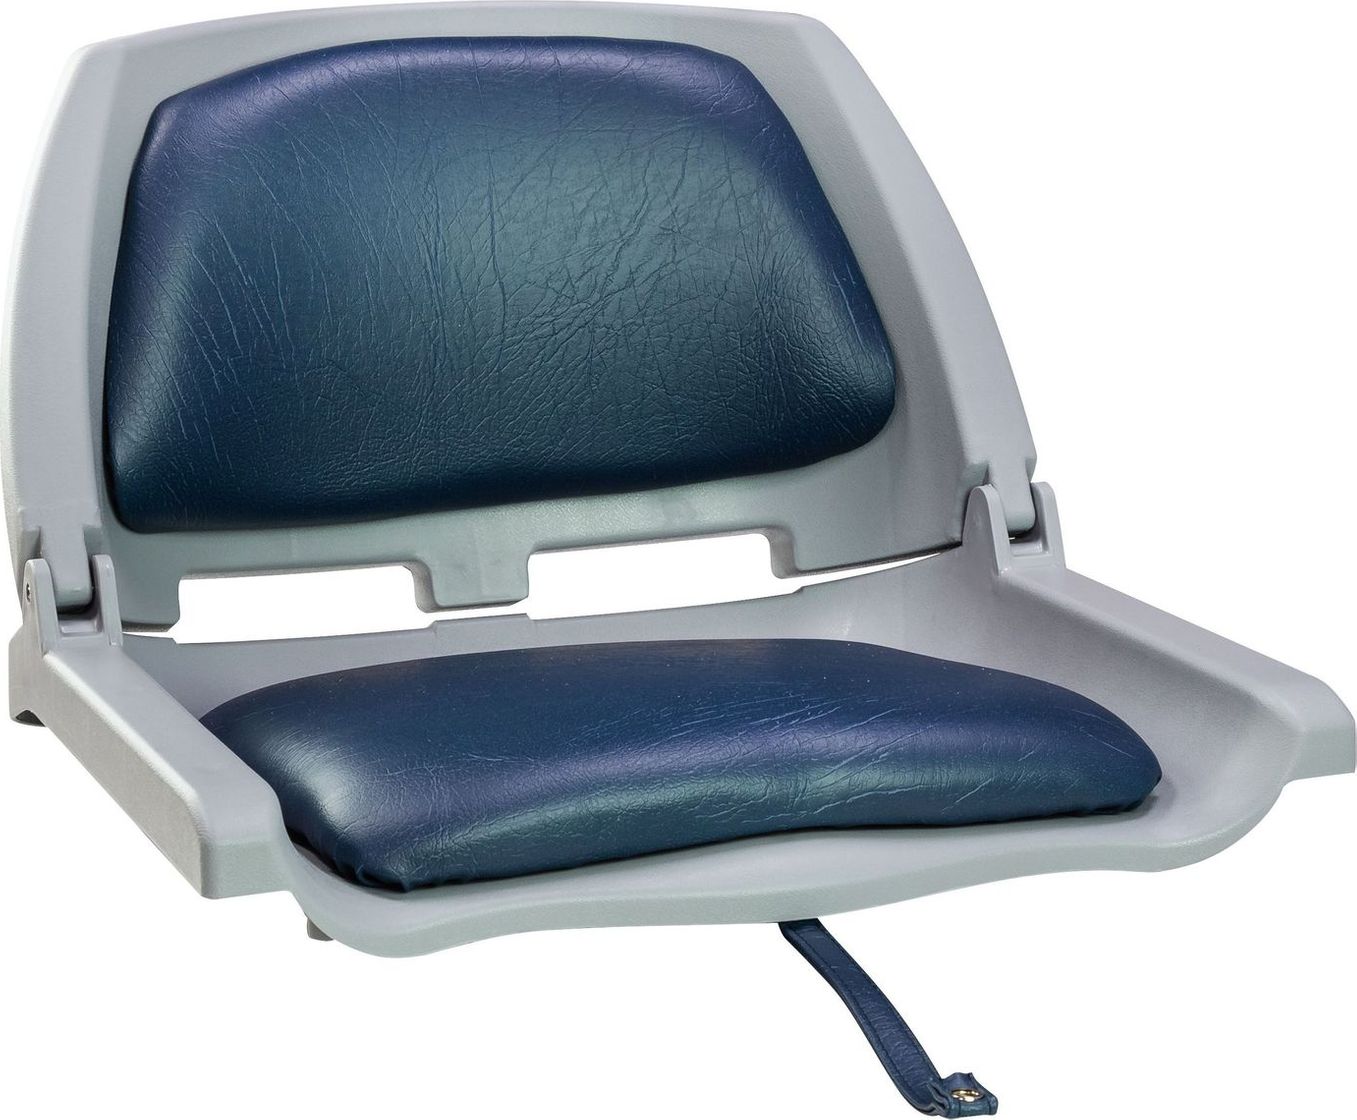 Кресло складное мягкое TRAVELER, цвет серый/синий (упаковка из 2 шт.) 1061112C_pkg_2 подставка под кресло вращающаяся с креплением к баночке надувной лодки упаковка из 2 шт c12565 pkg 2